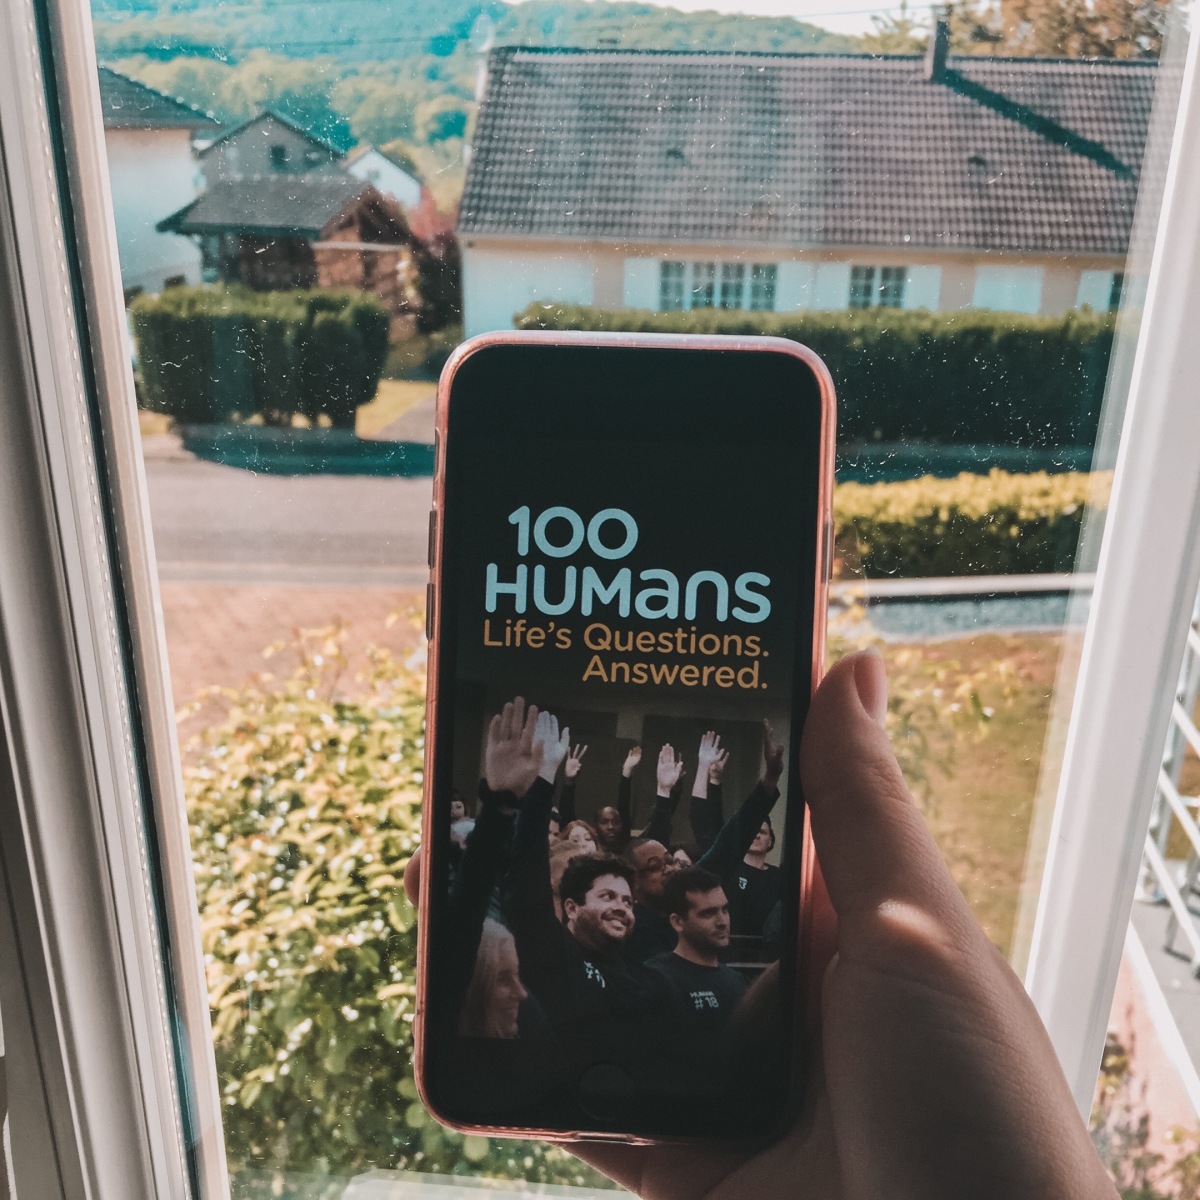 Série : The 100 humans